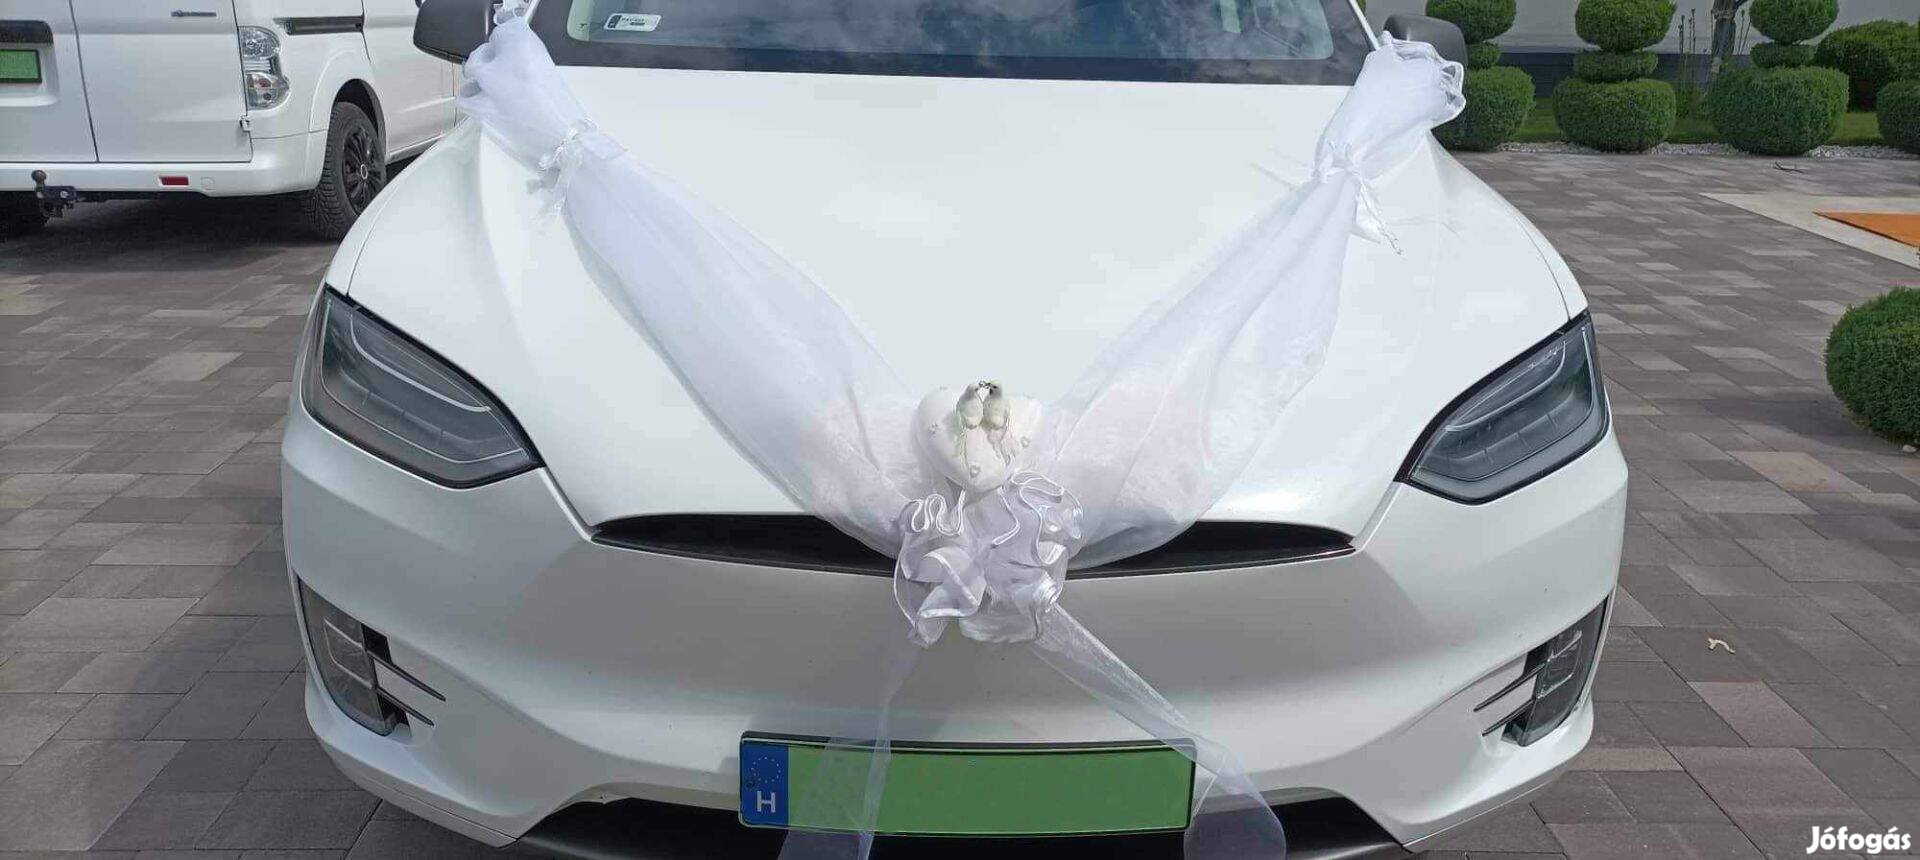 Esküvői autódísz, dekoráció